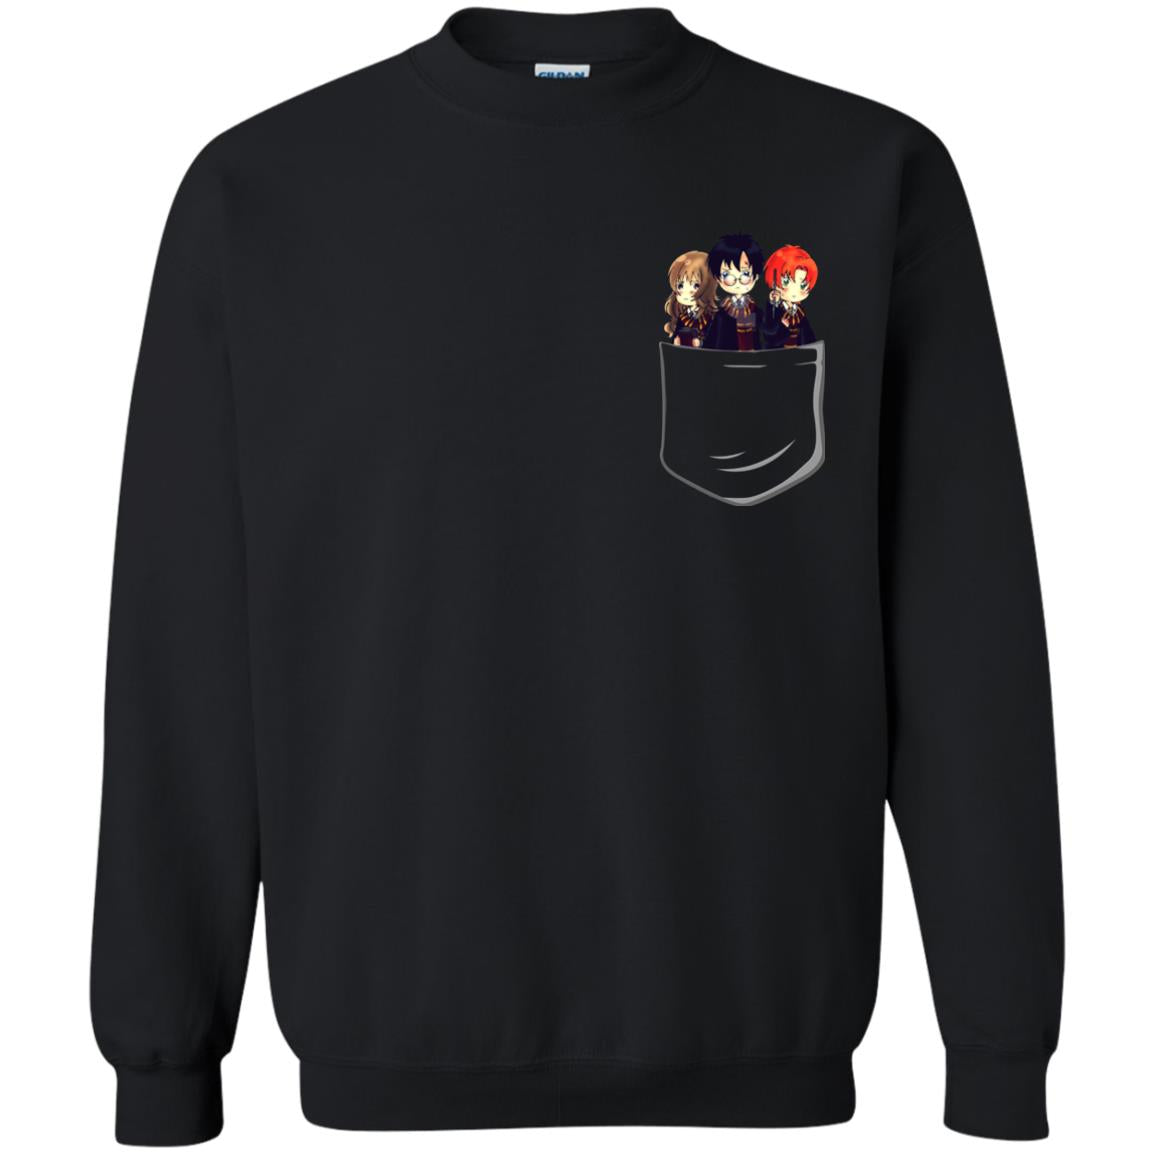 Harry Potter Pocket Movie Lover T-shirtG180 Gildan Crewneck Pullover Sweatshirt 8 oz.